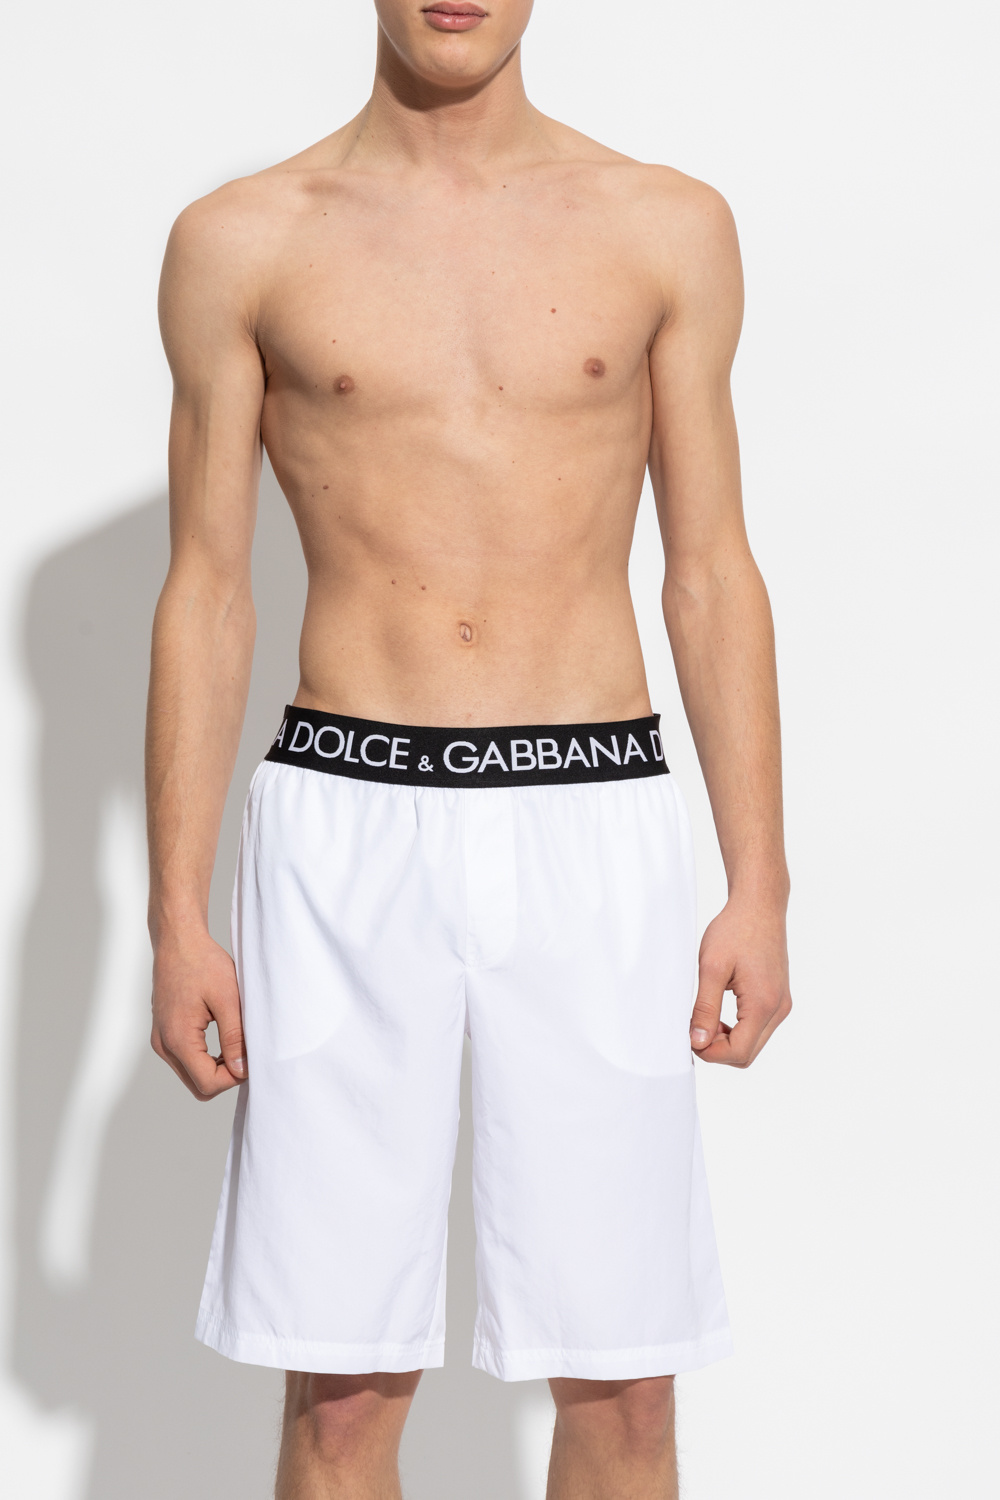 Dolce & Gabbana Stiefeletten mit DG-Absatz Schwarz Swimming shorts